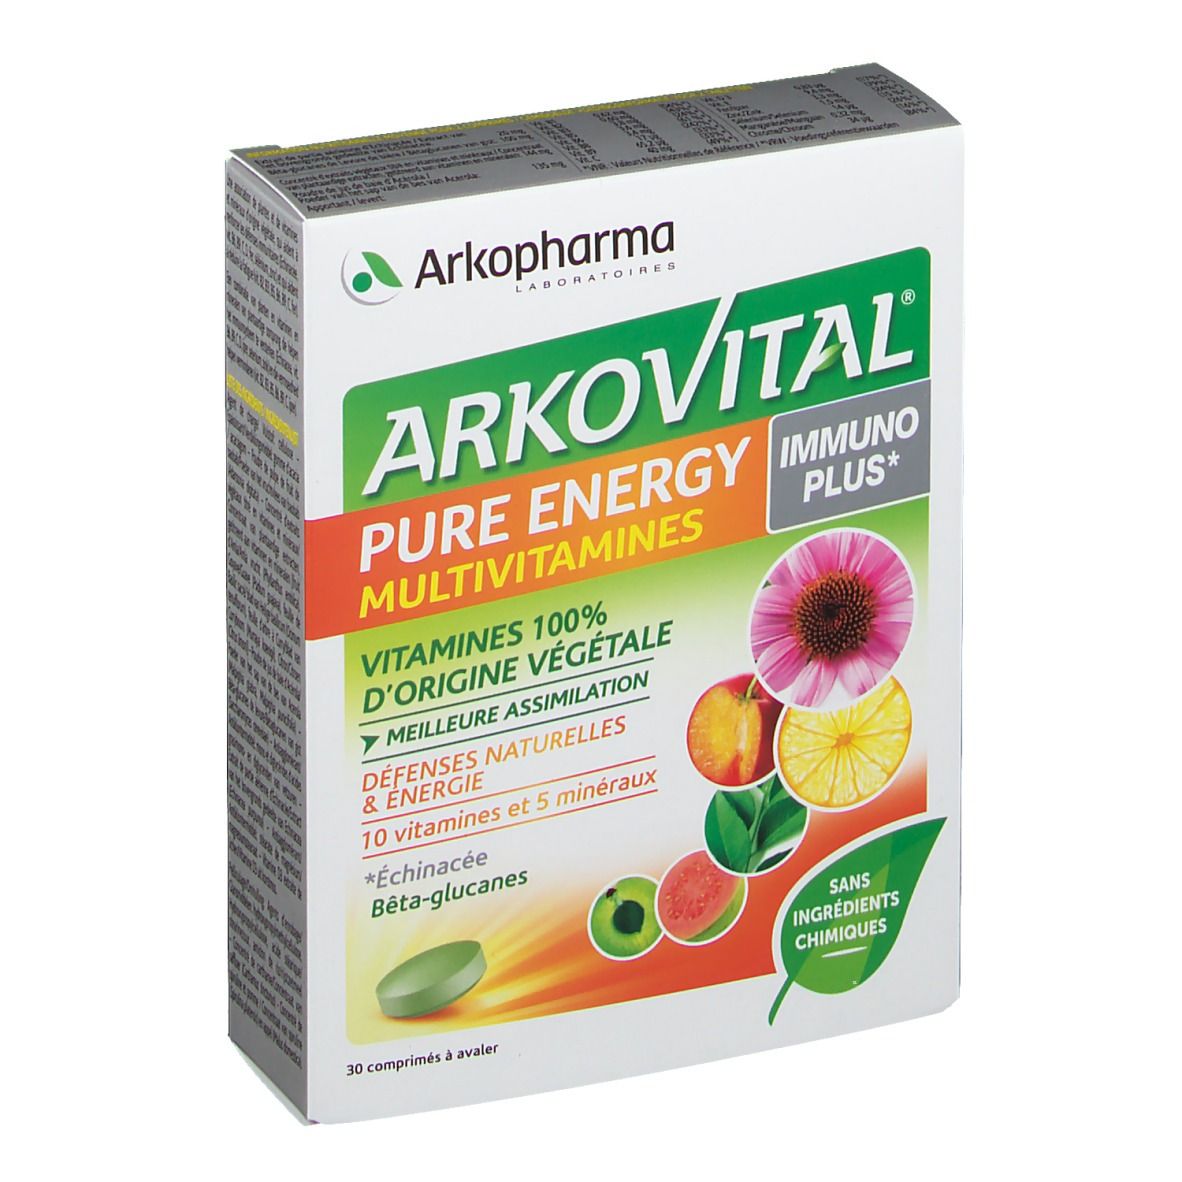 Arkovital Pure Energy Immunoplus